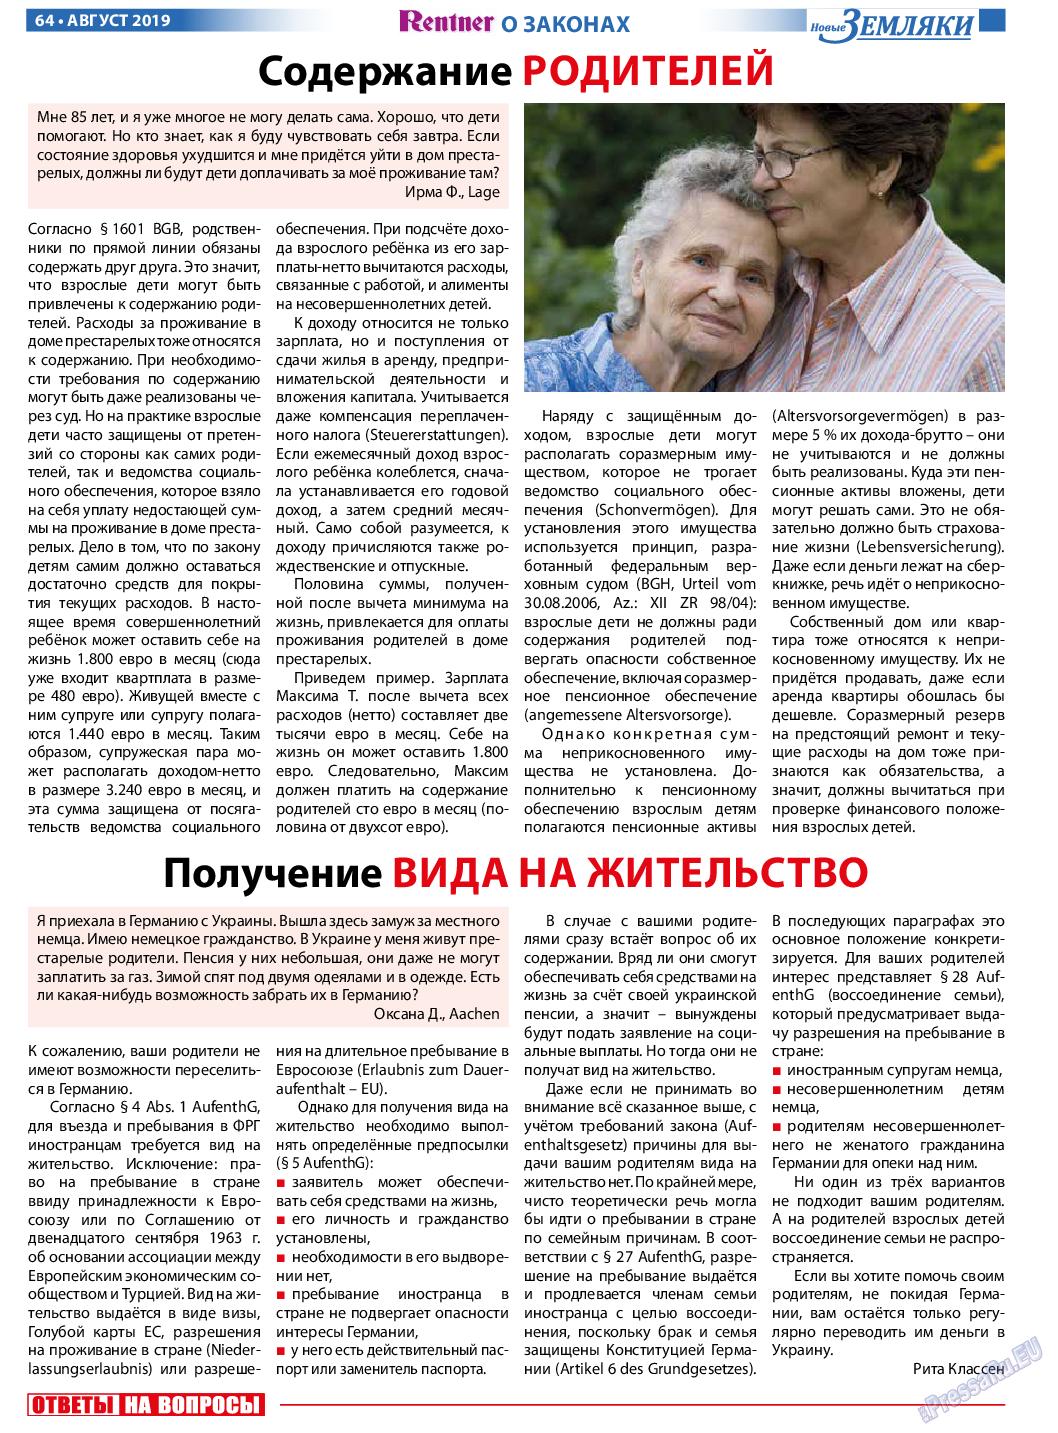 Новые Земляки (газета). 2019 год, номер 8, стр. 64